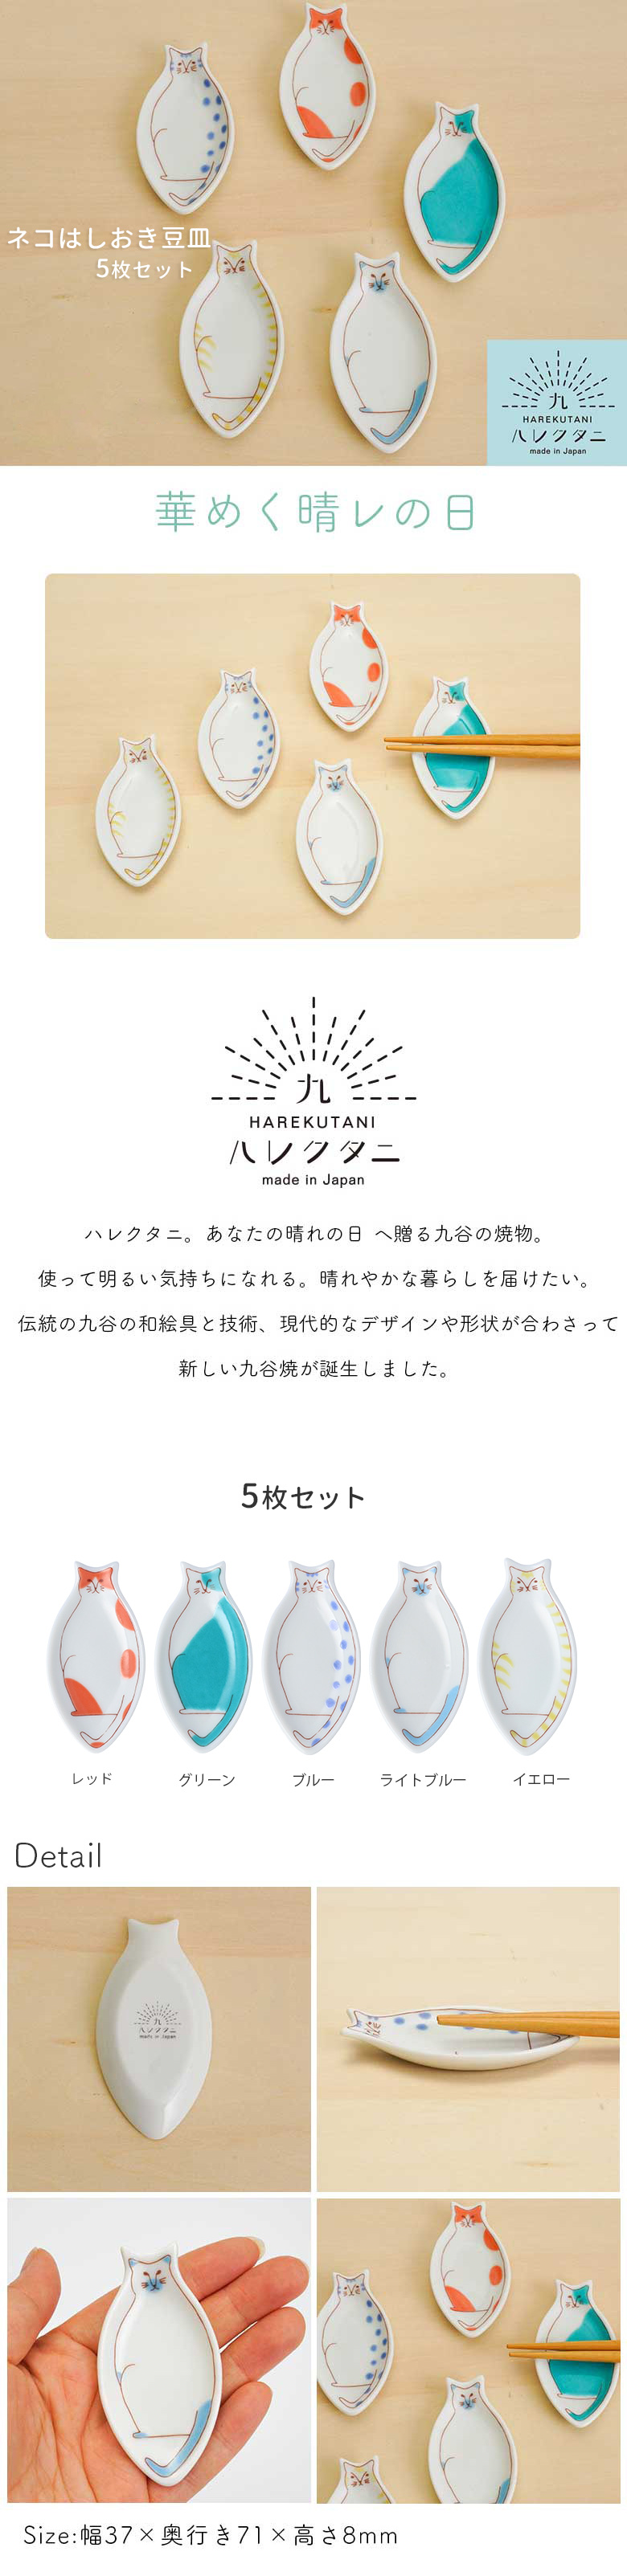 【九谷焼】ネコはしおき豆皿 5枚セット/ハレクタニ